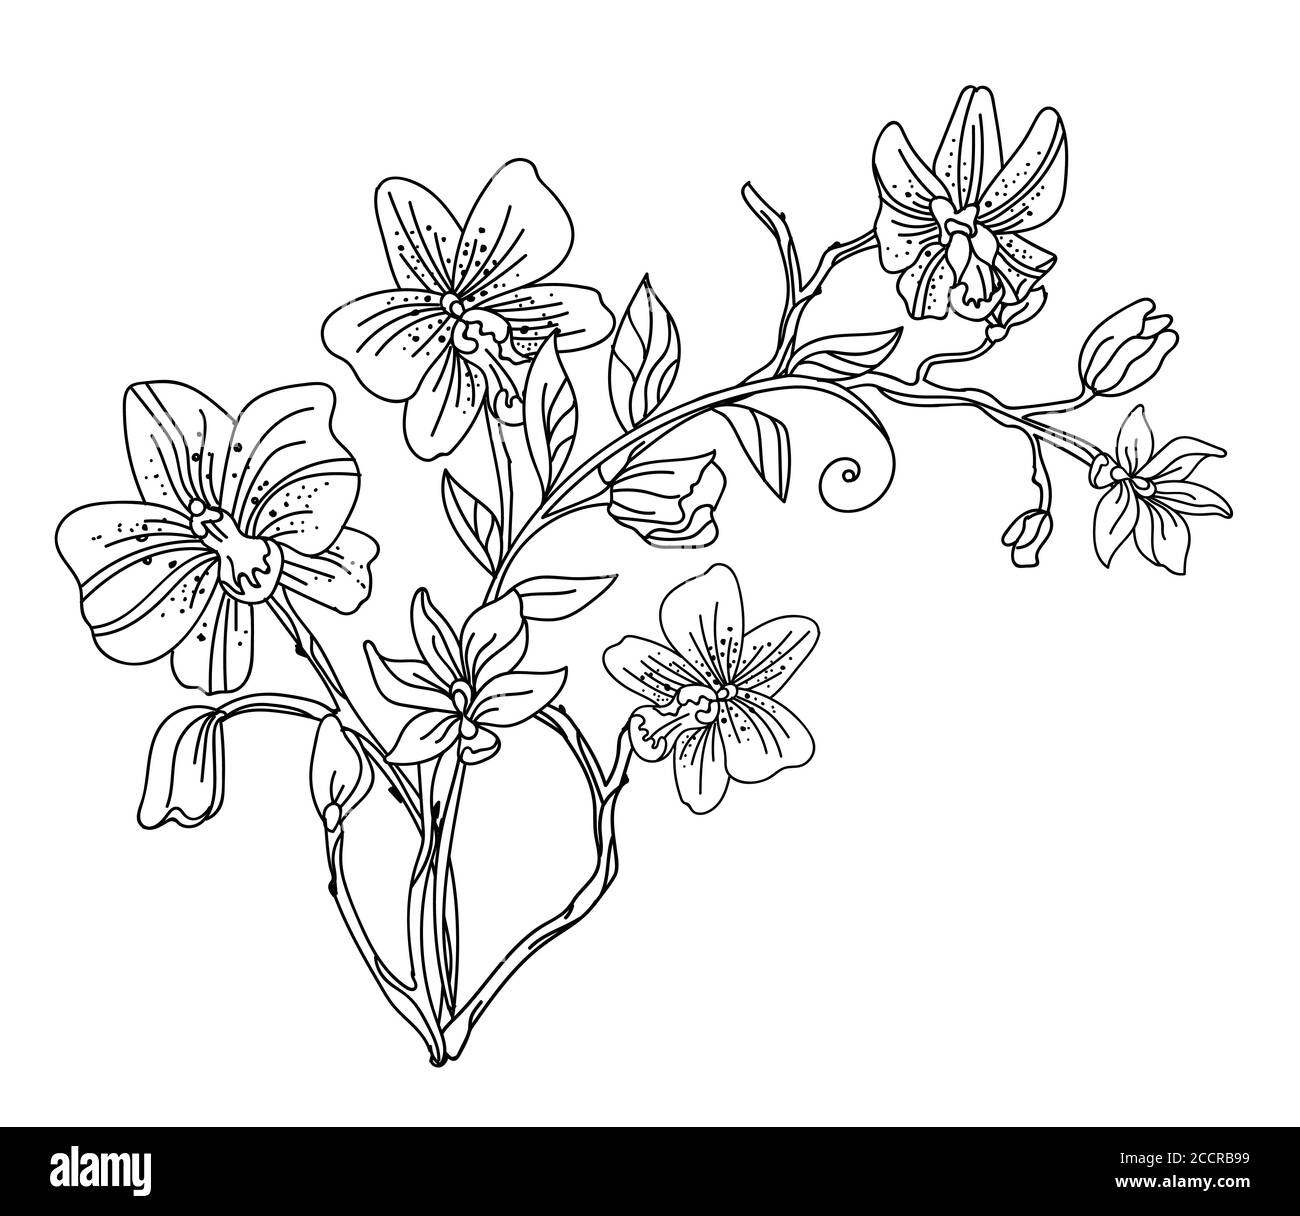 Floral botanique dessin à la main art décoratif orchidée composition florale. Illustration vectorielle monochrome modèle floral pour invitation de mariage, végétalien Illustration de Vecteur